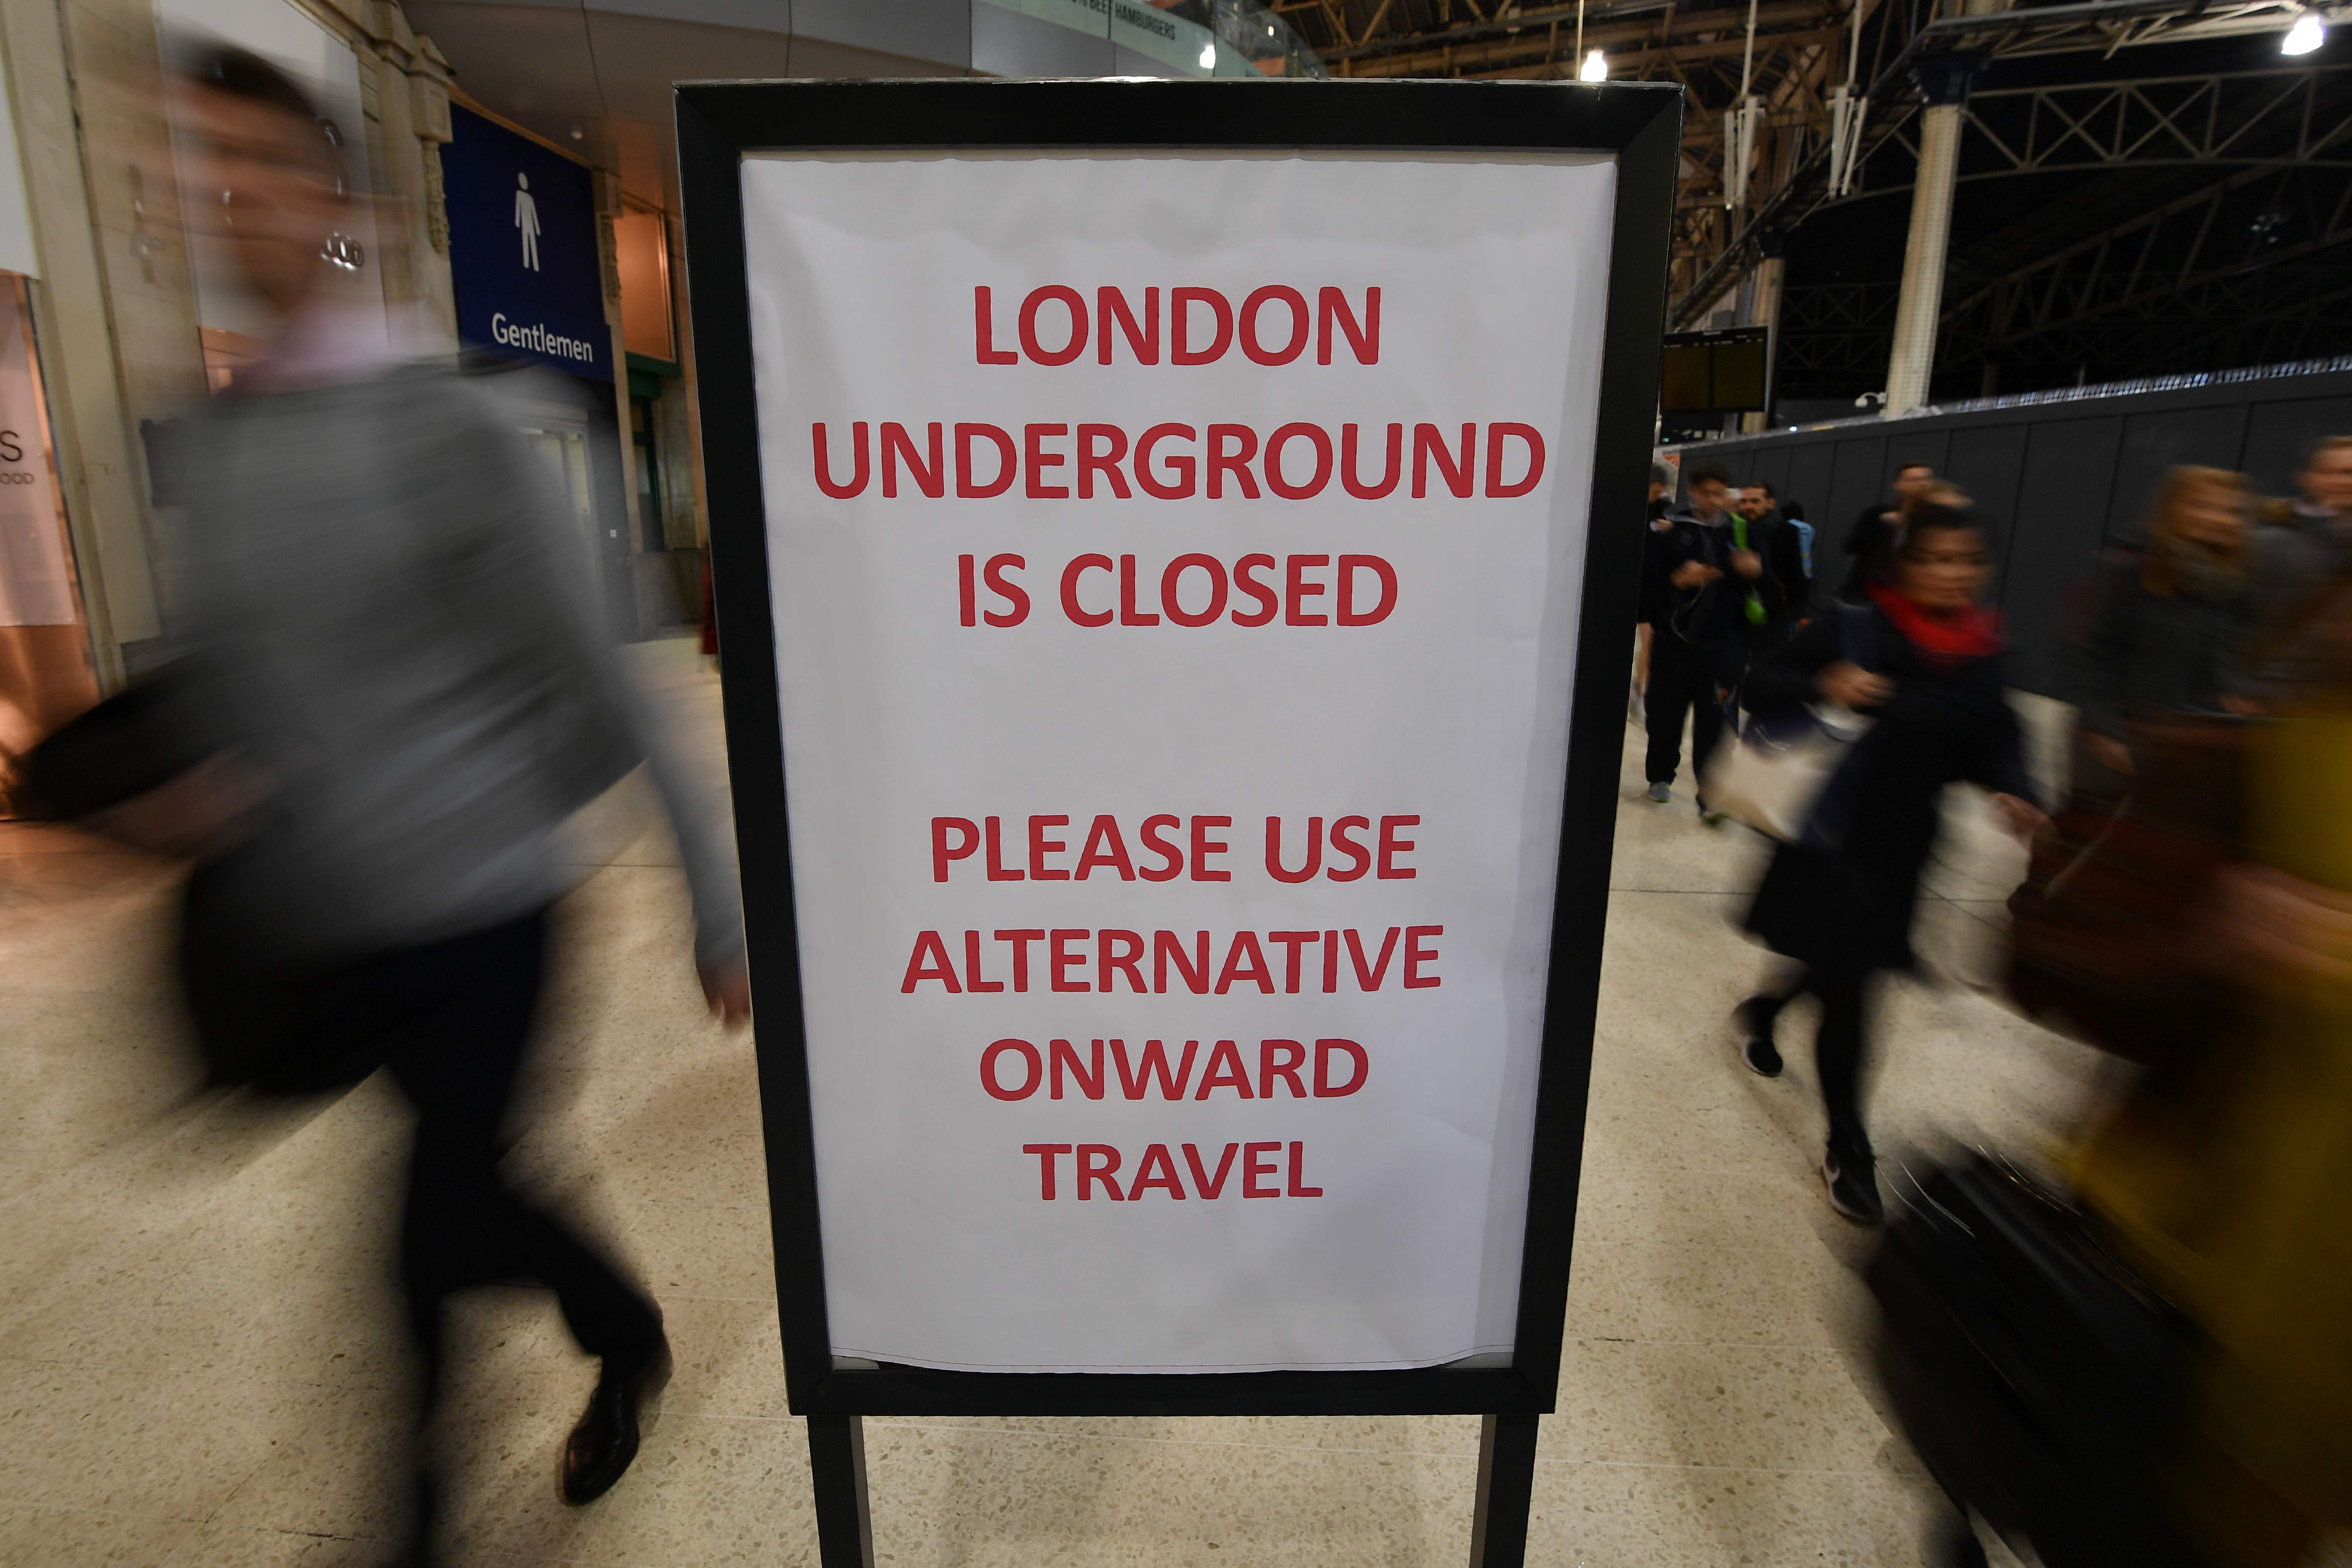 لافتة مكتوب عليها أن المترو مغلق فى لندن وعلى الركاب استخدام وسائل مواصلات بديلة - أ ف ب